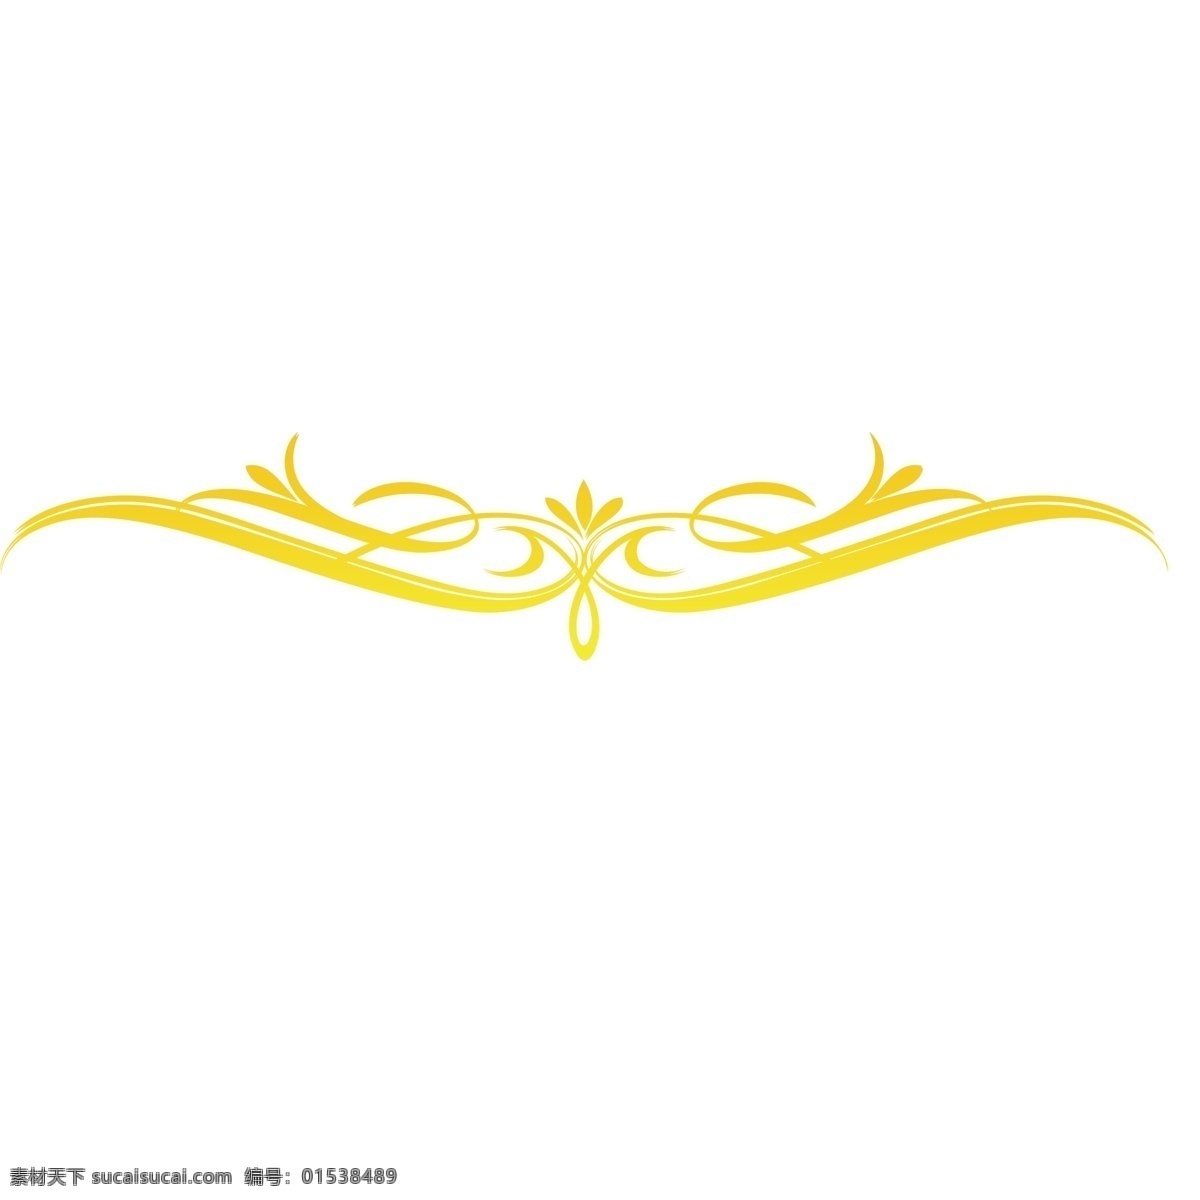 金色 创意 花纹 边框 元素 纹理 装饰 翅膀 飞舞 富贵 金属 质感 闪耀